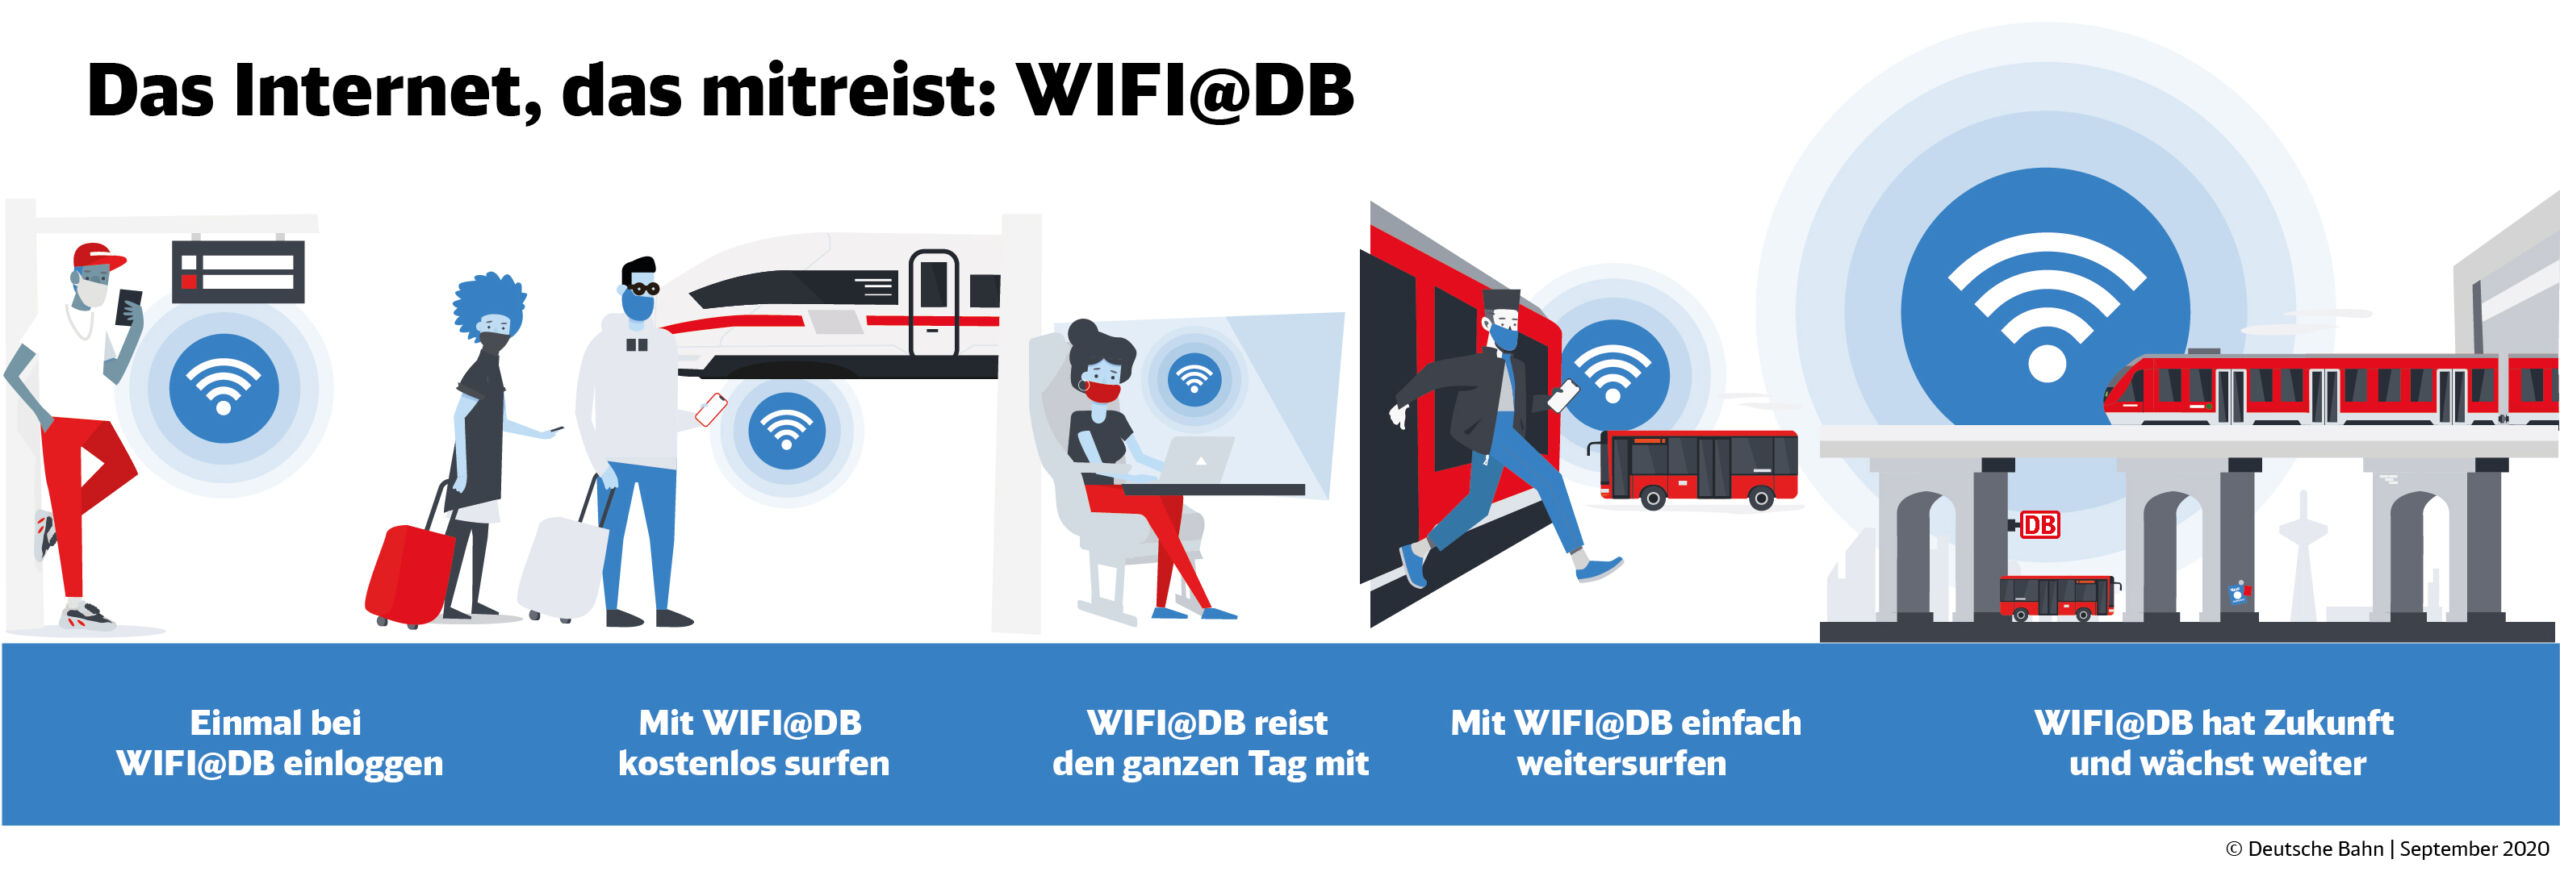 WiFi@DB - Das Internet, das mitreist